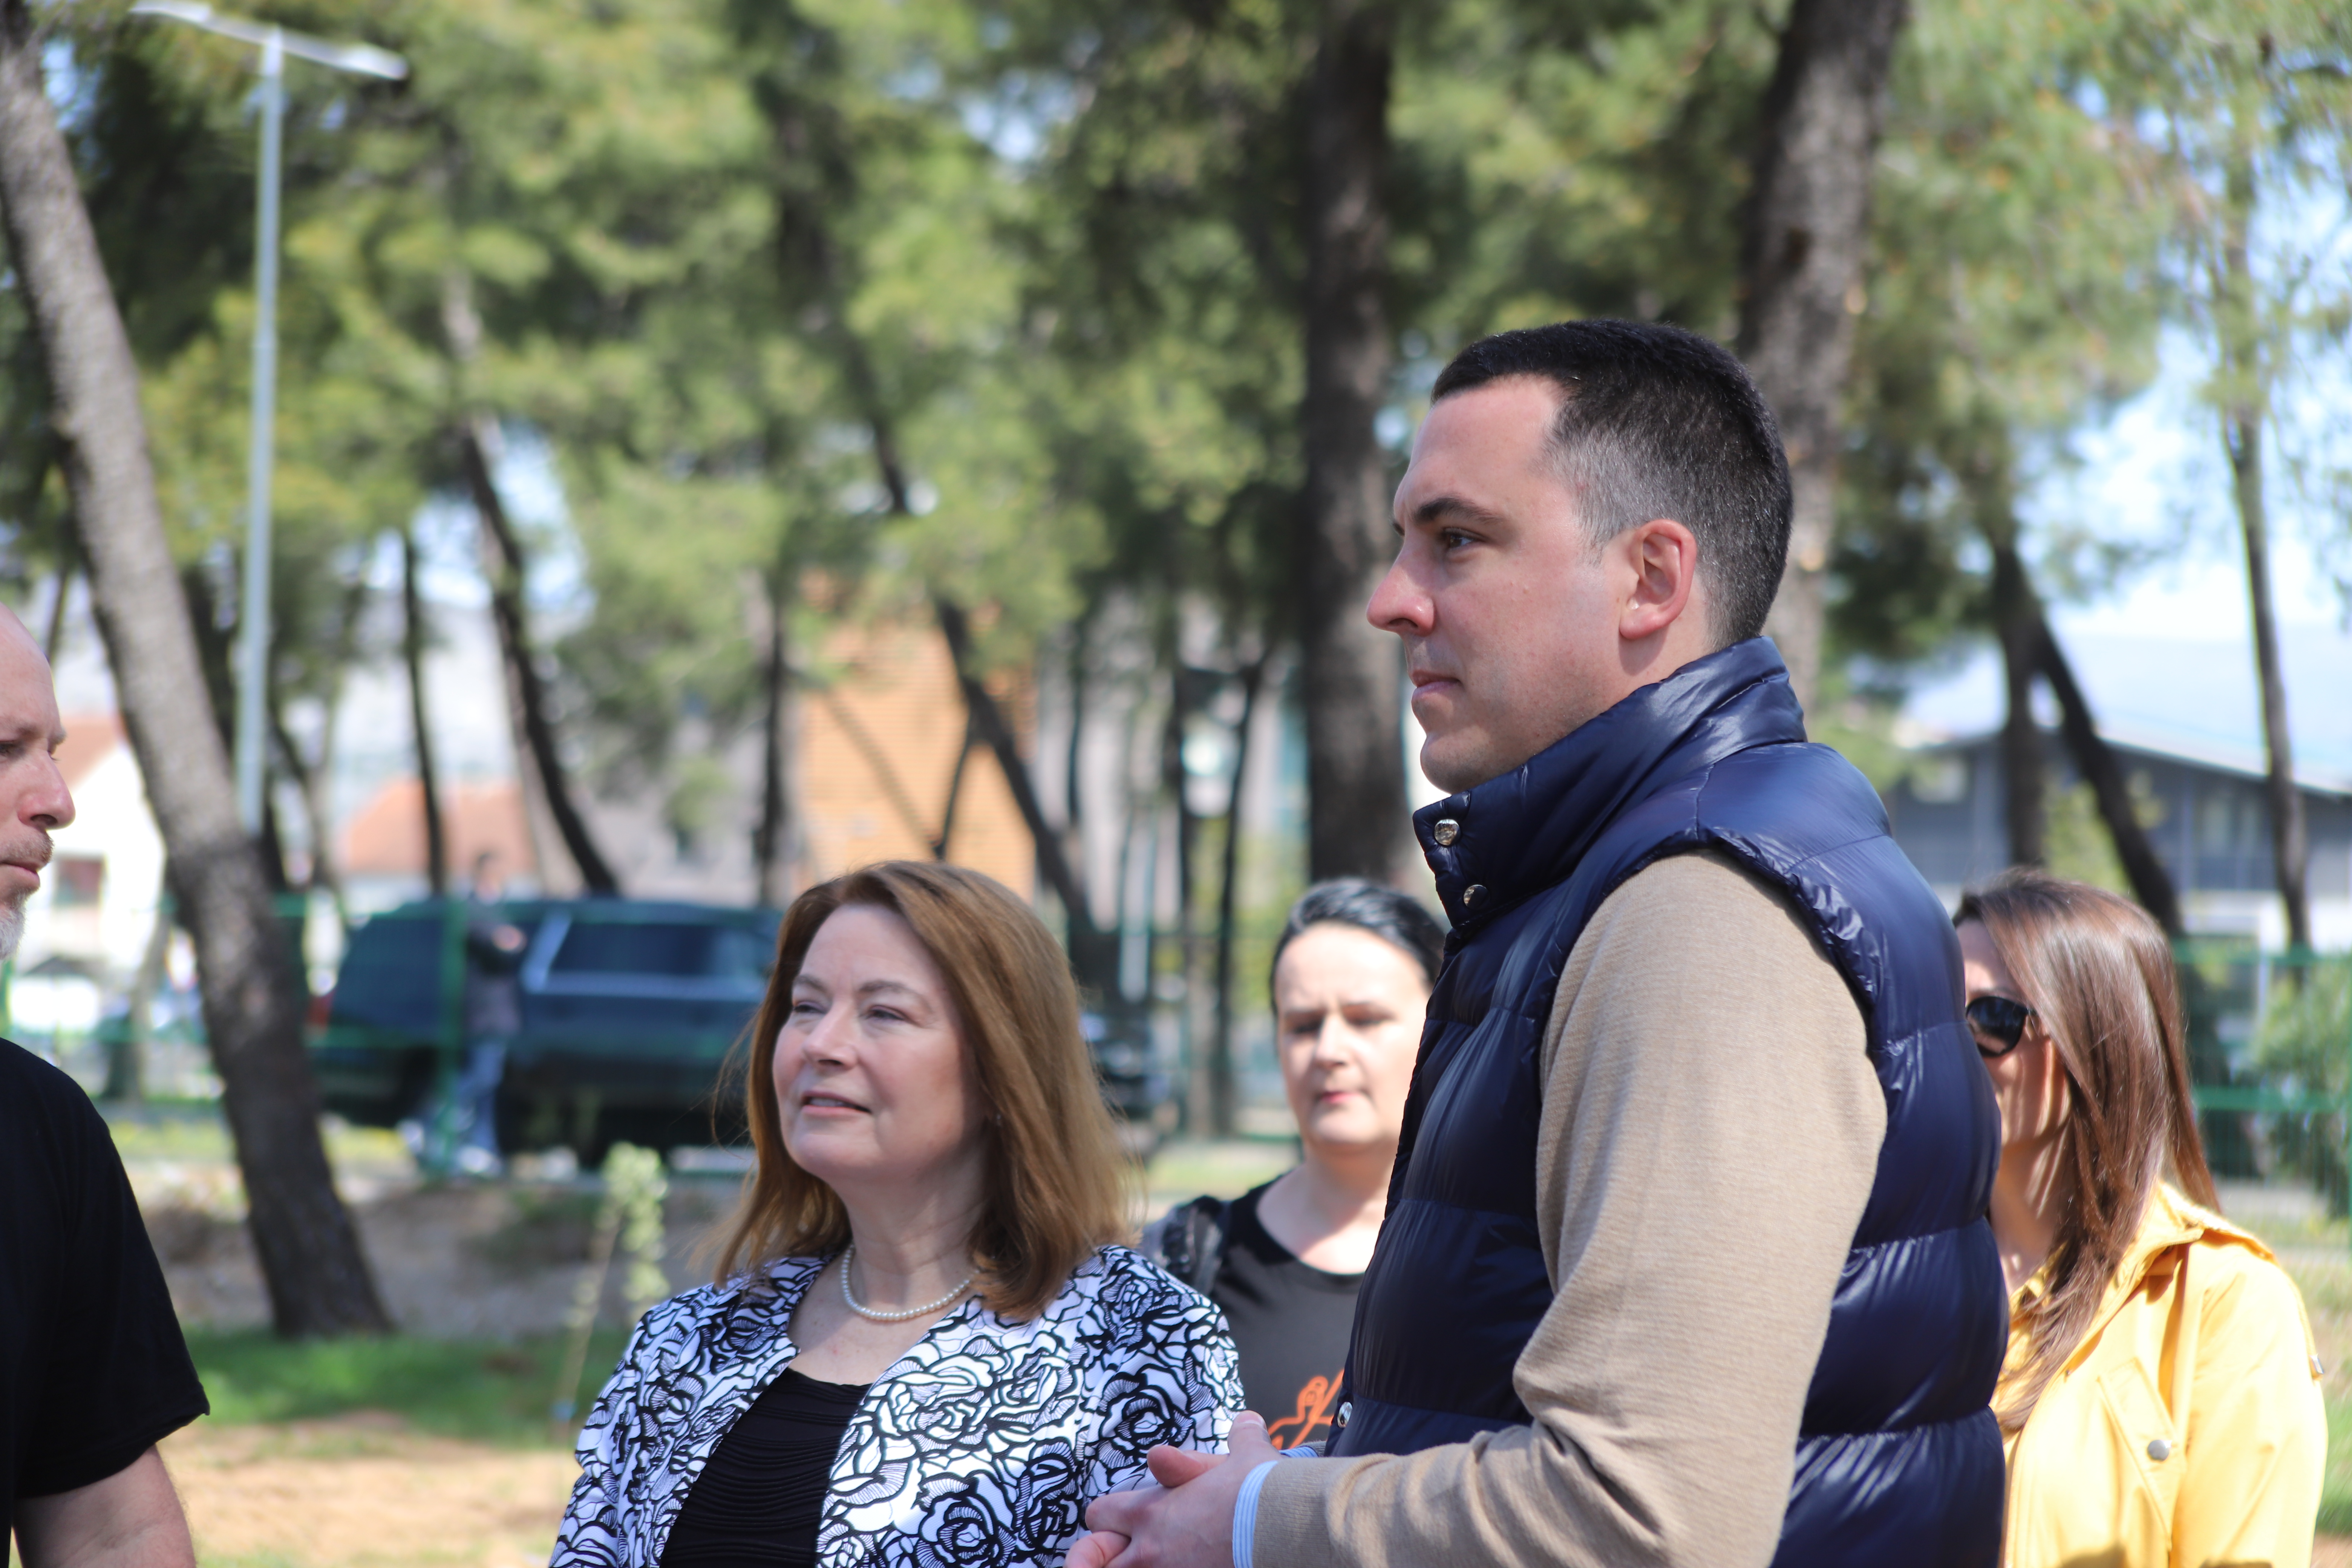 Zvanično otvorena prva urbana bašta u Podgorici; Mjesto koje će podstaći osjećaj zajedništva